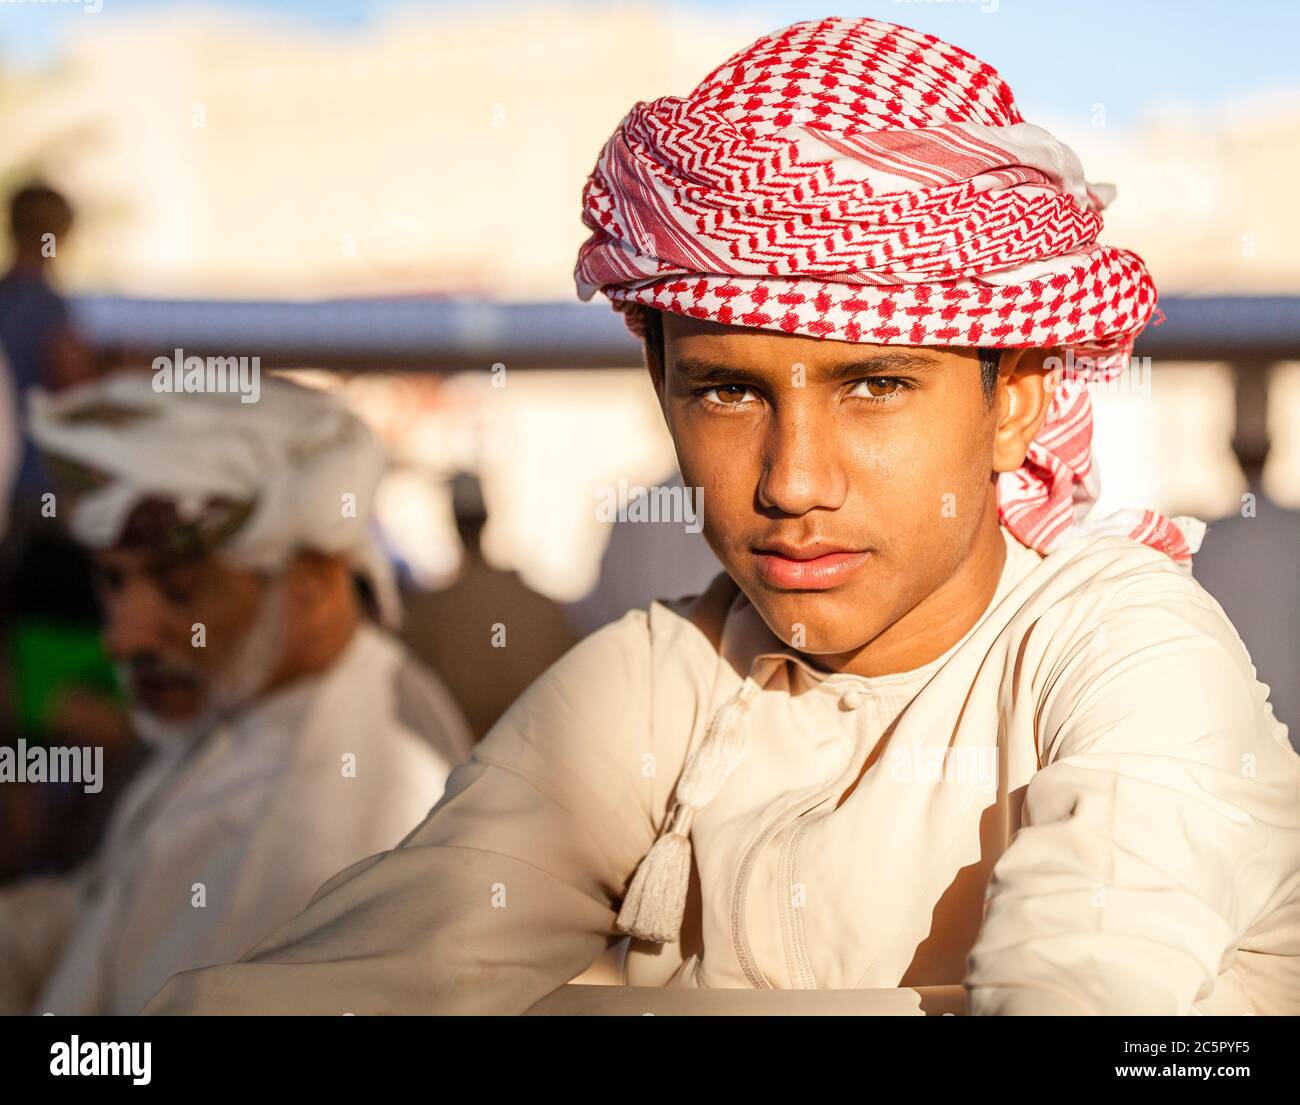 Nizwa, Oman, 2. Dezember 2016: Porträt eines einheimischen Jungen in traditioneller Kleidung auf dem Ziegenmarkt am Freitag in Nizwa, Oman Stockfoto